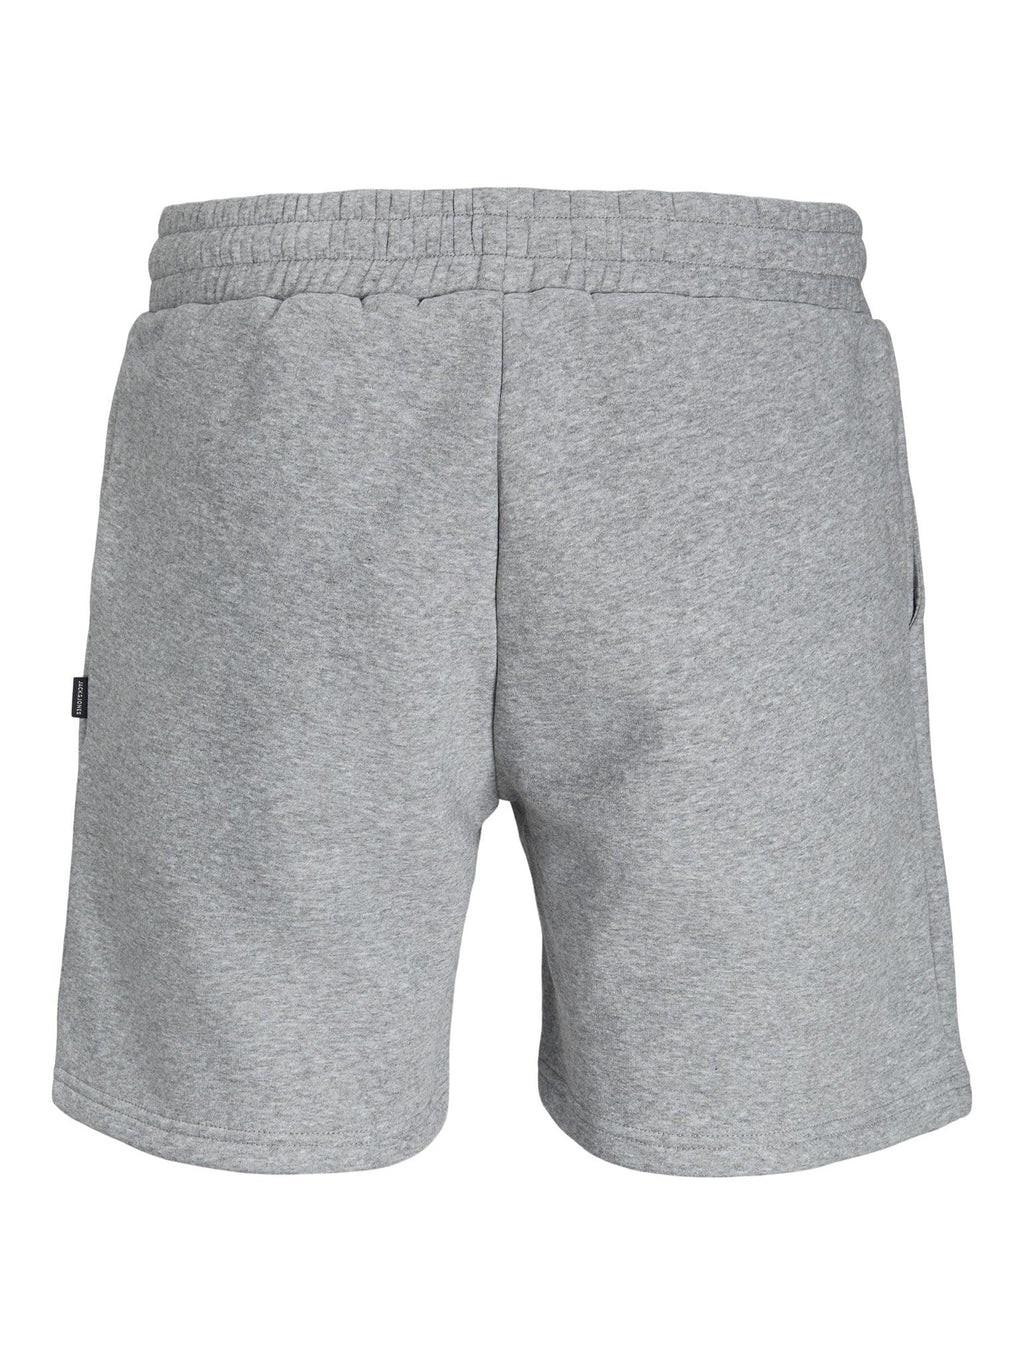 Shorts de sudor de estrellas - Melange gris claro